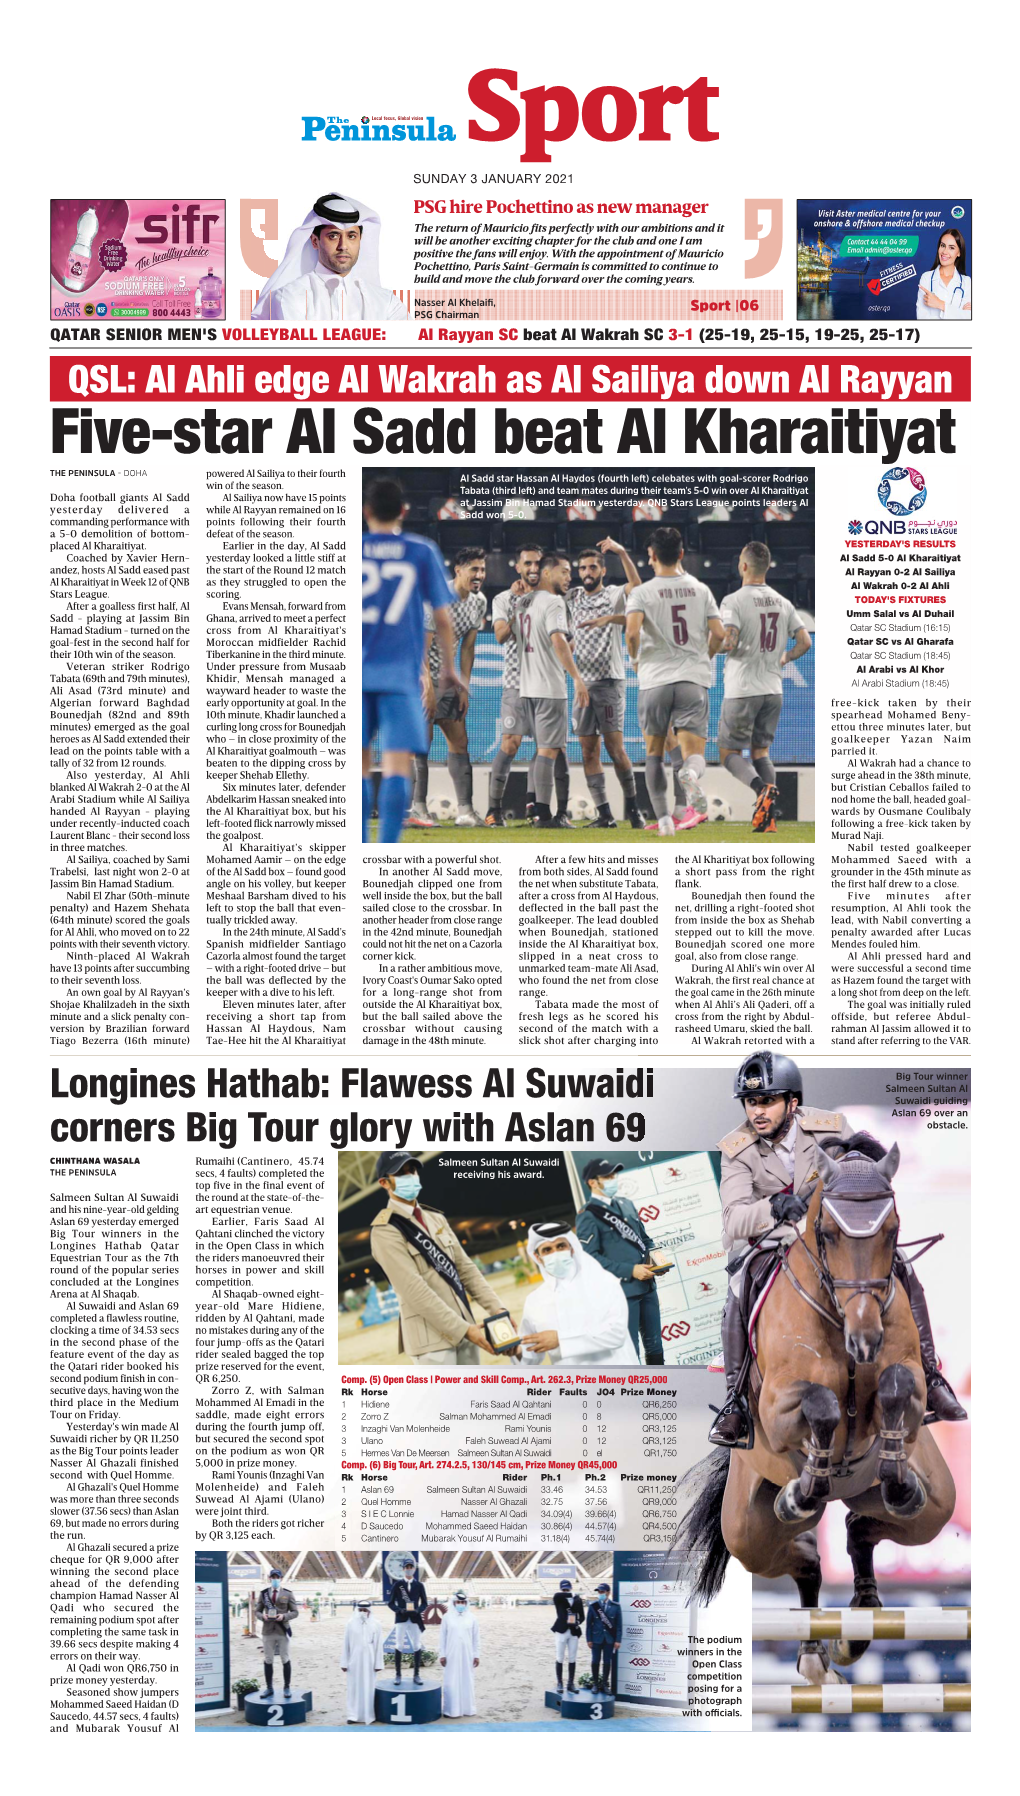 Five-Star Al Sadd Beat Al Kharaitiyat